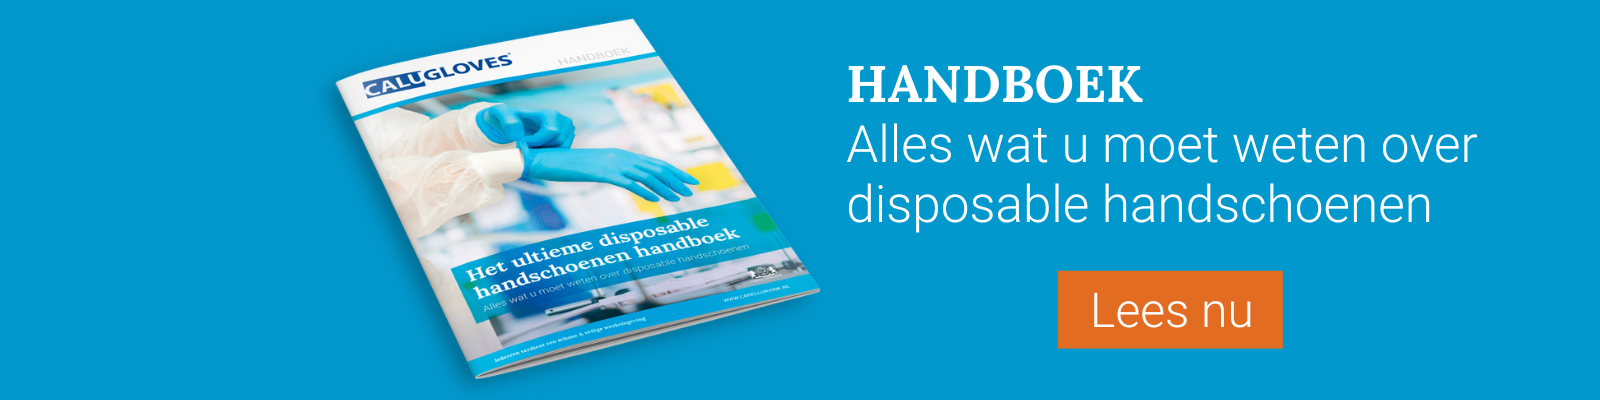 Food CTA - Disposable handschoenen handboek